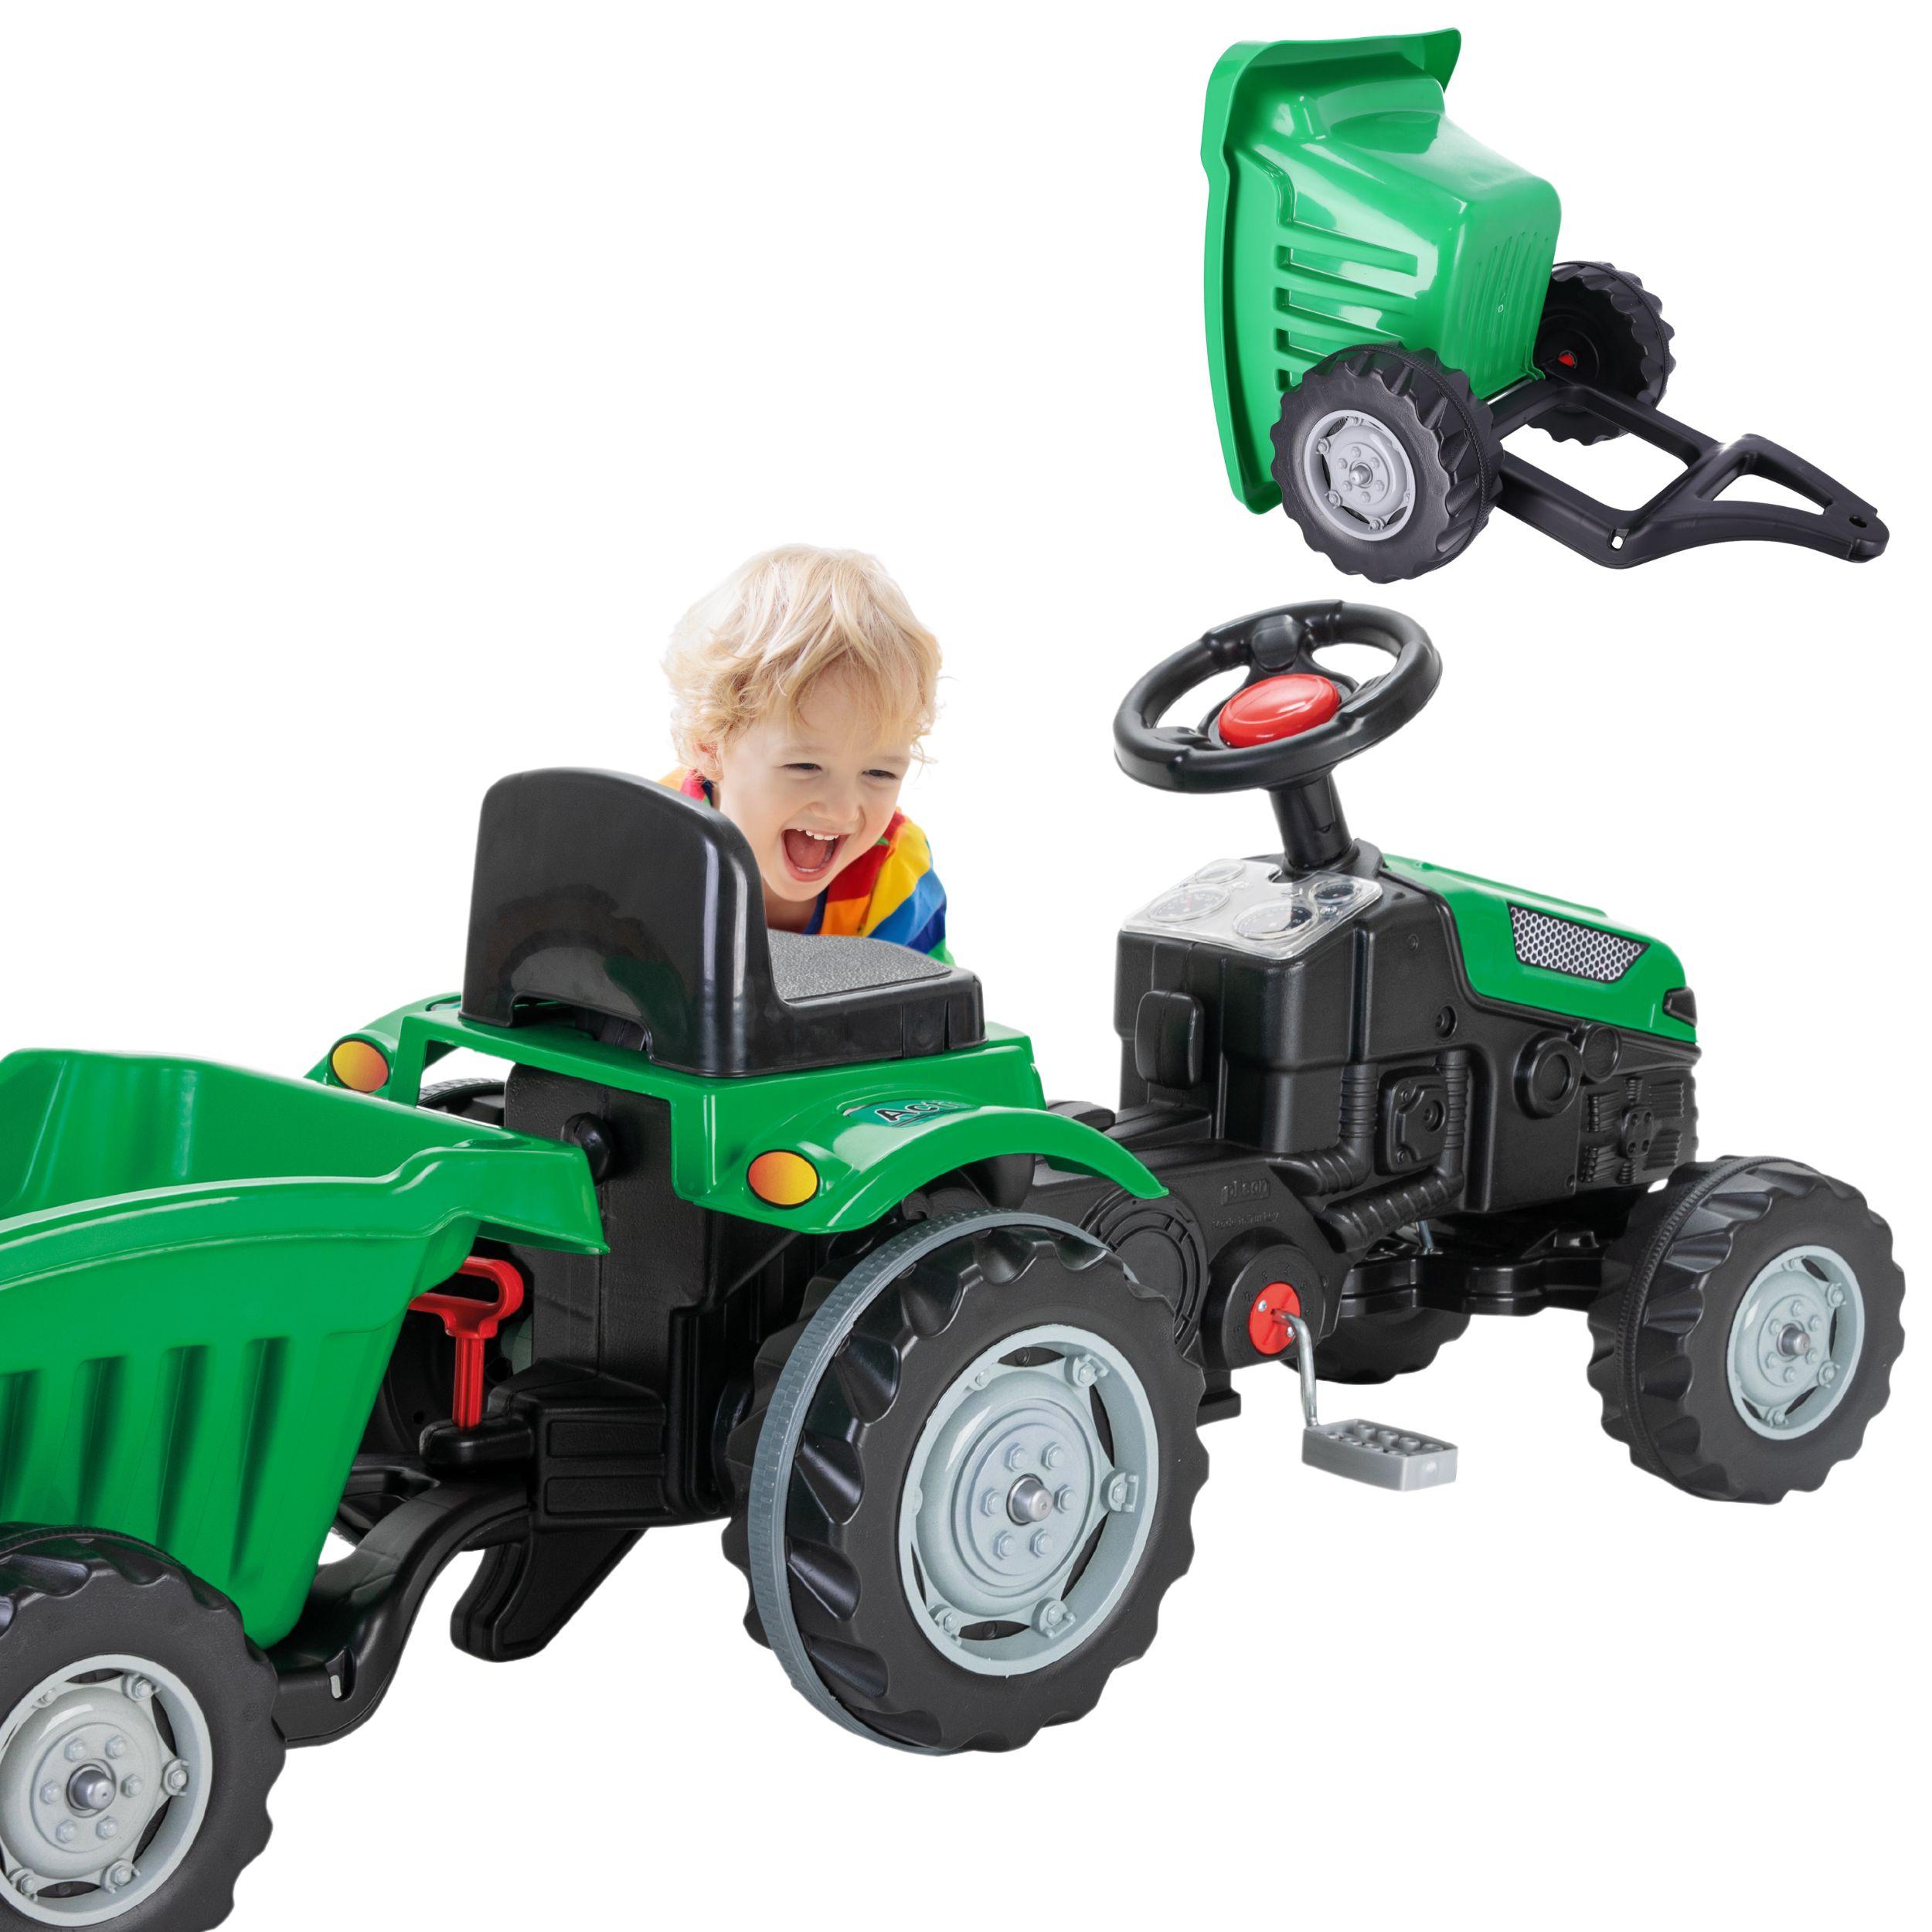 Traktorek dziecięcy zielony PILSAN